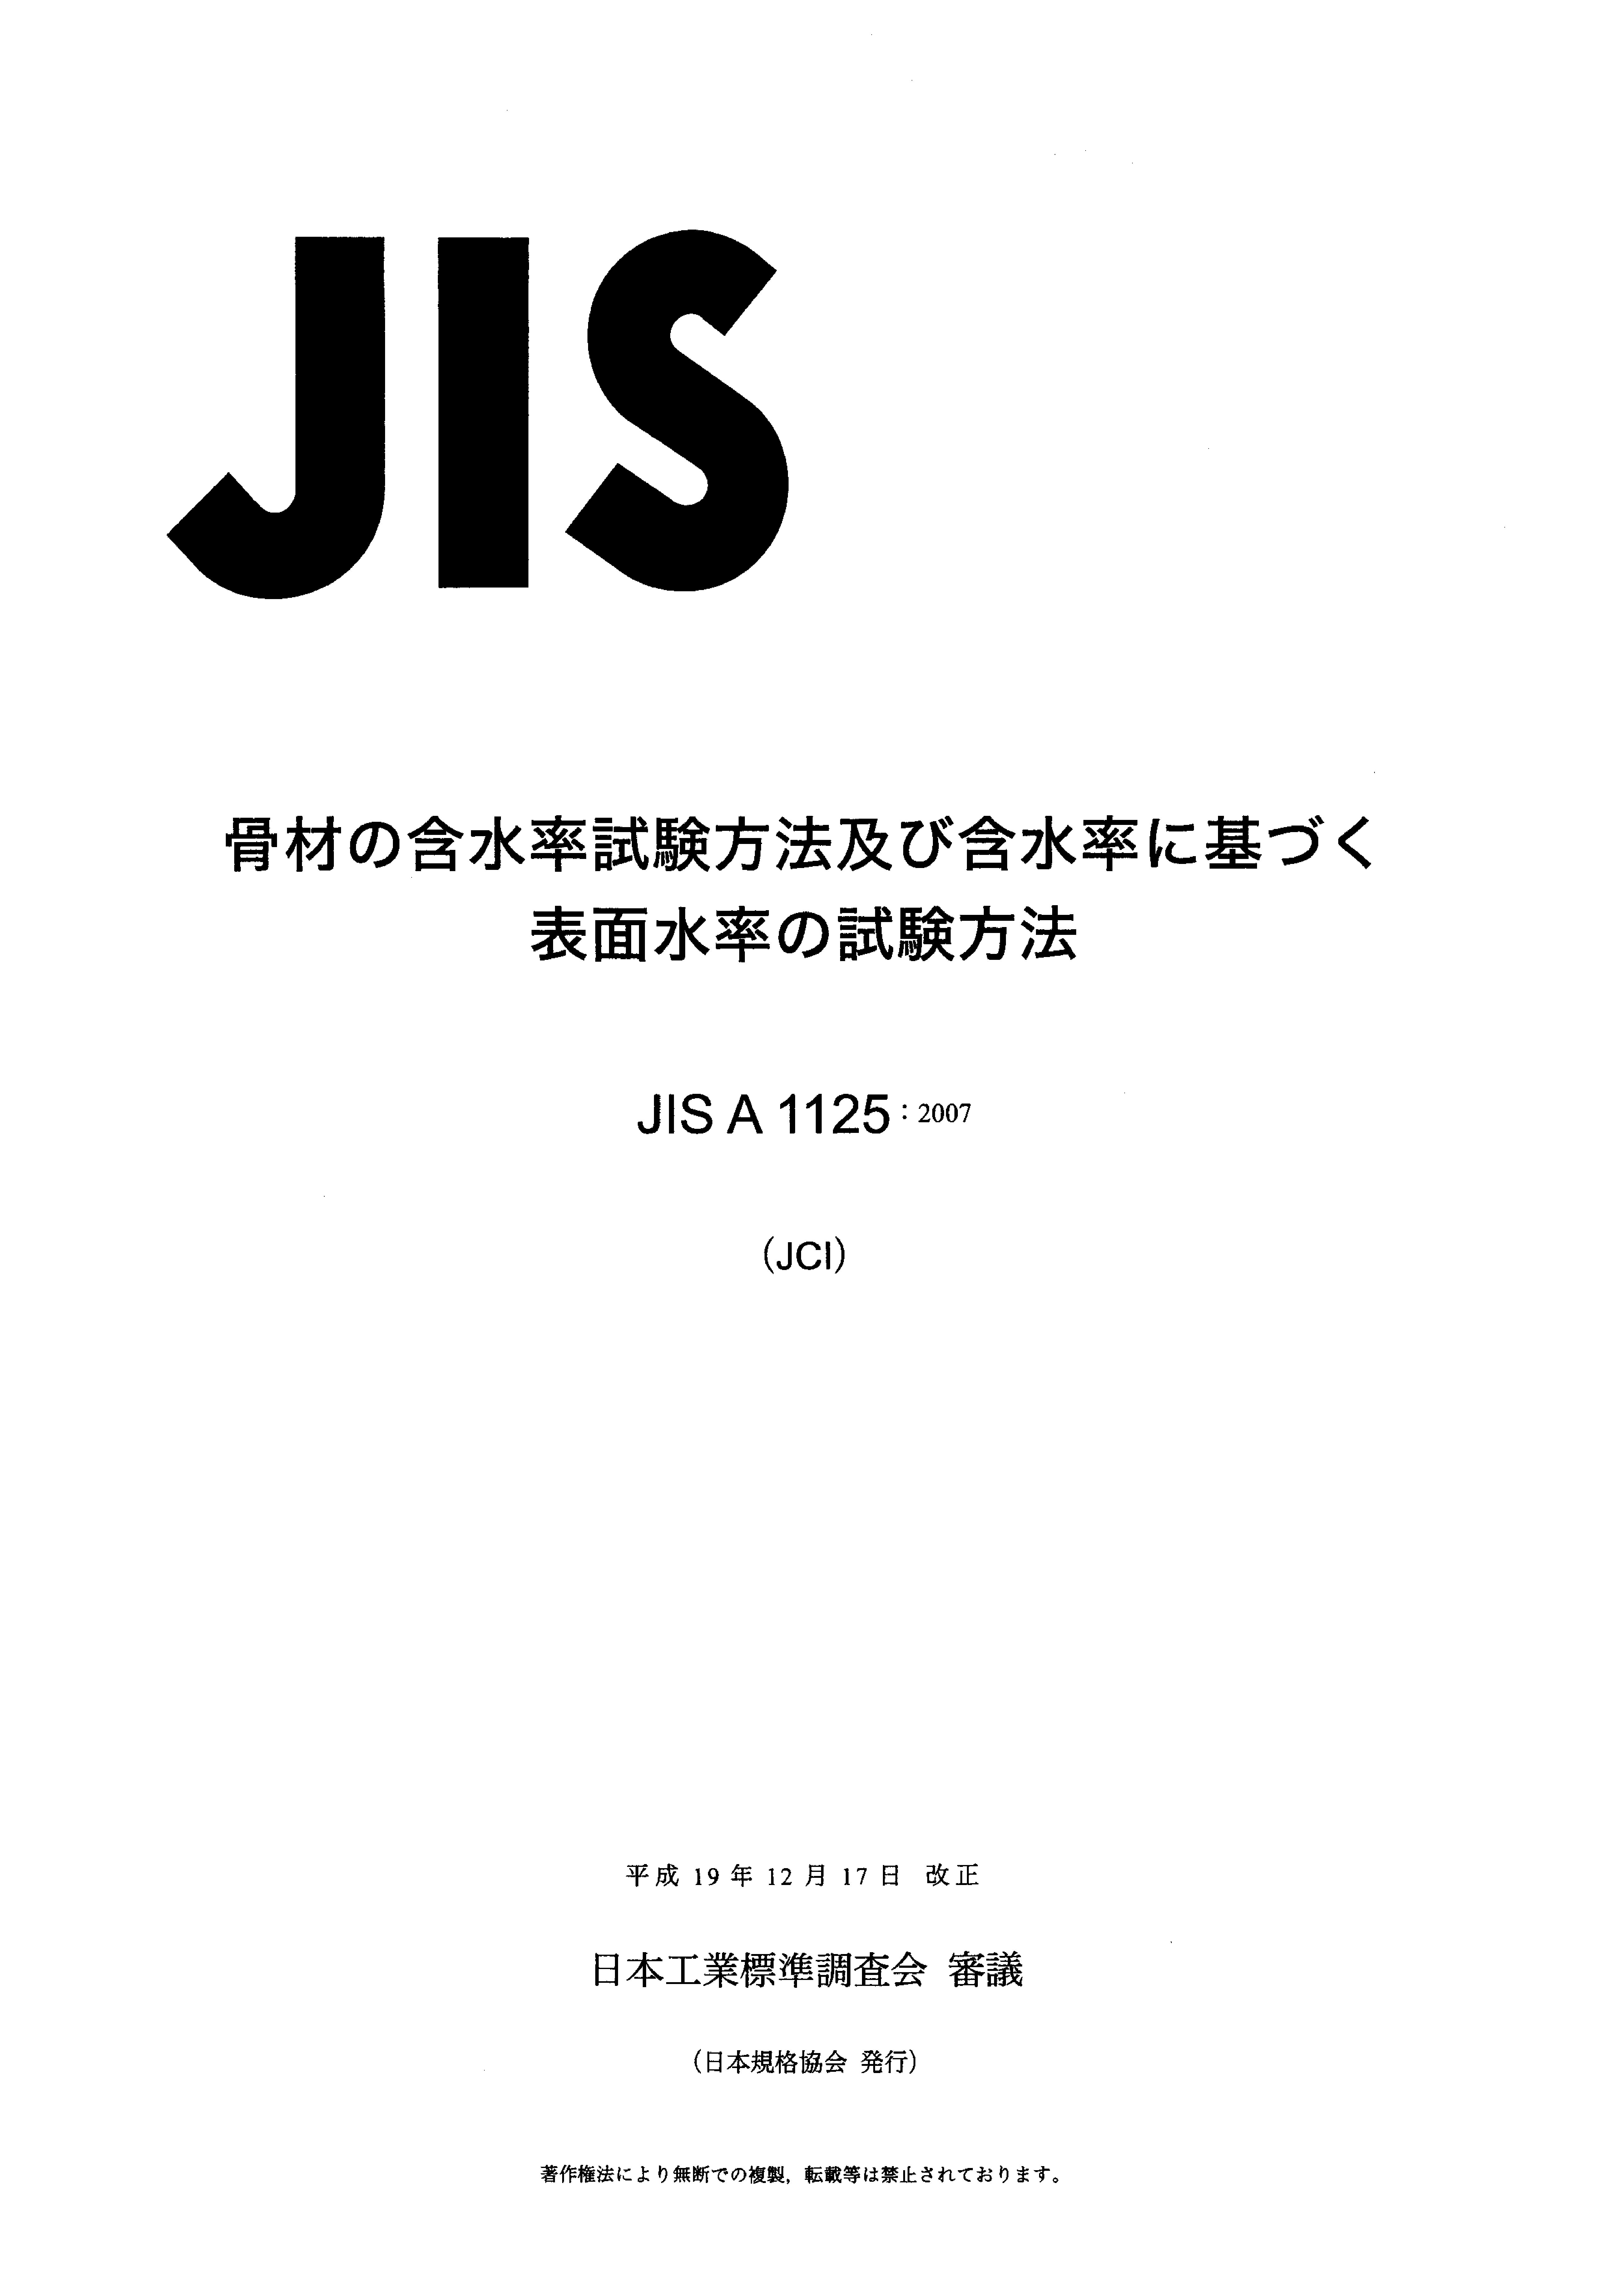 JIS A 1125:2007